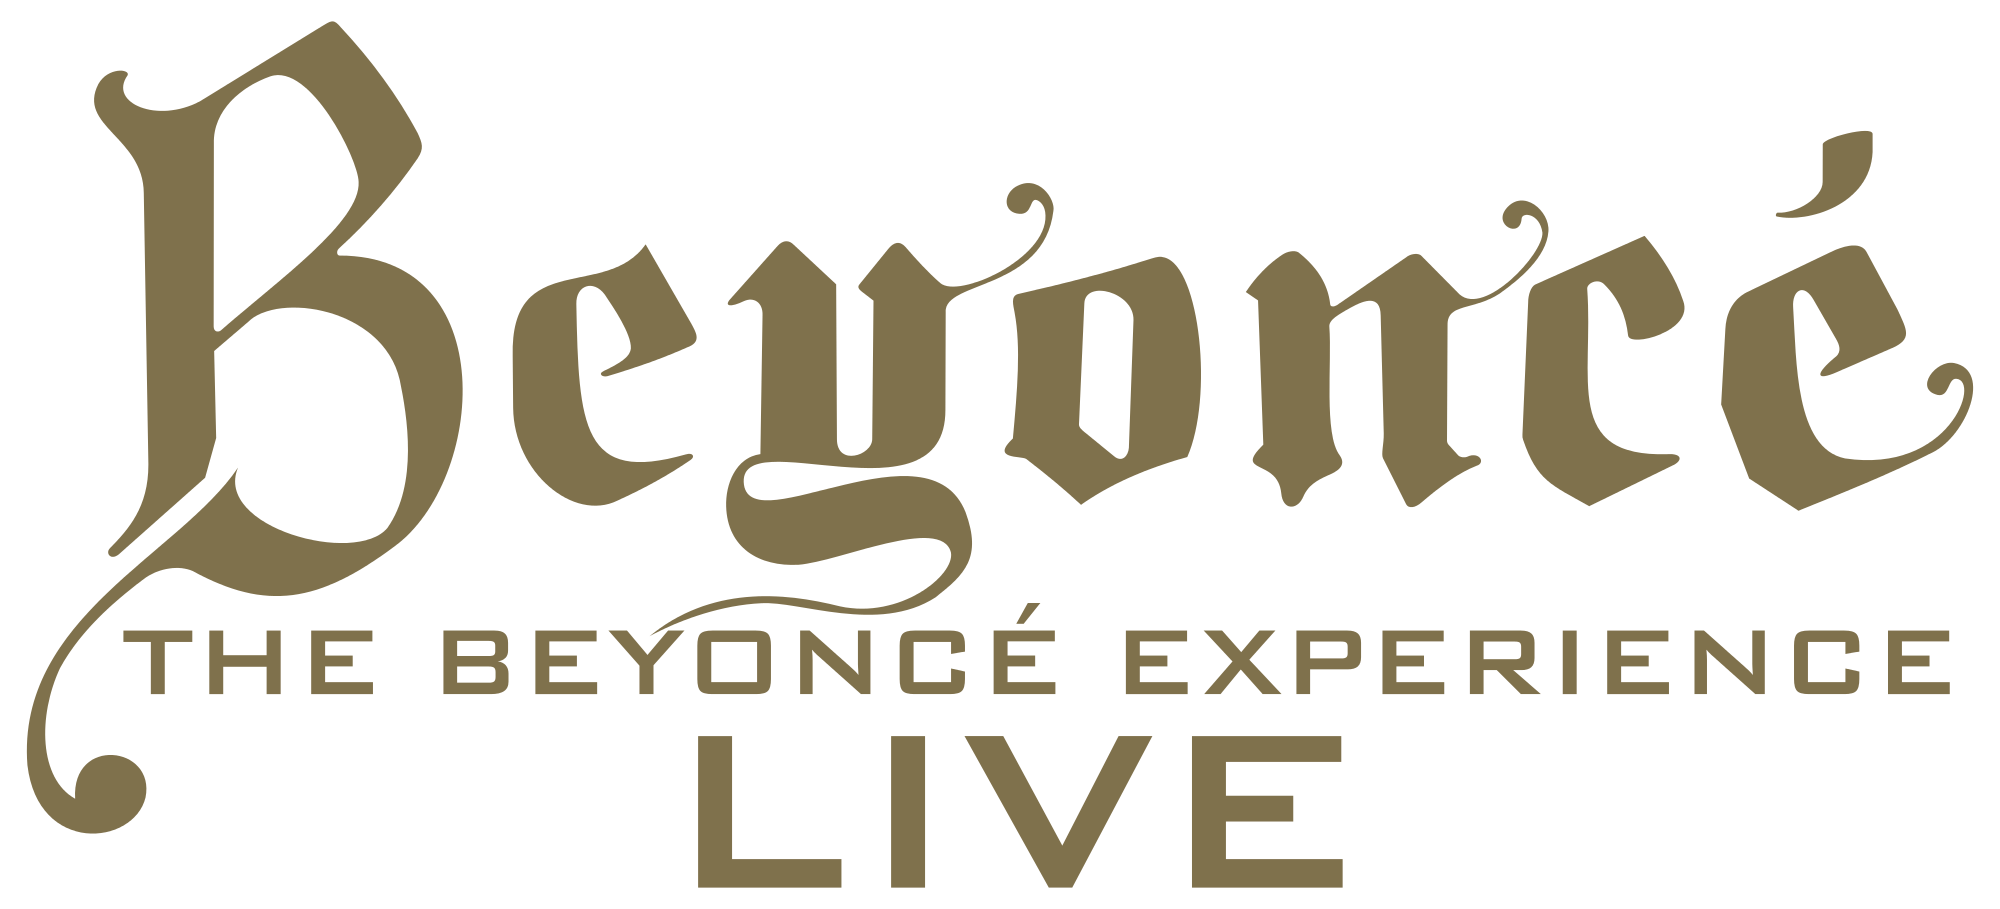 Beyonce Logo - File:Beyoncé - The Beyoncé Experience Live.svg - Wikimedia Commons